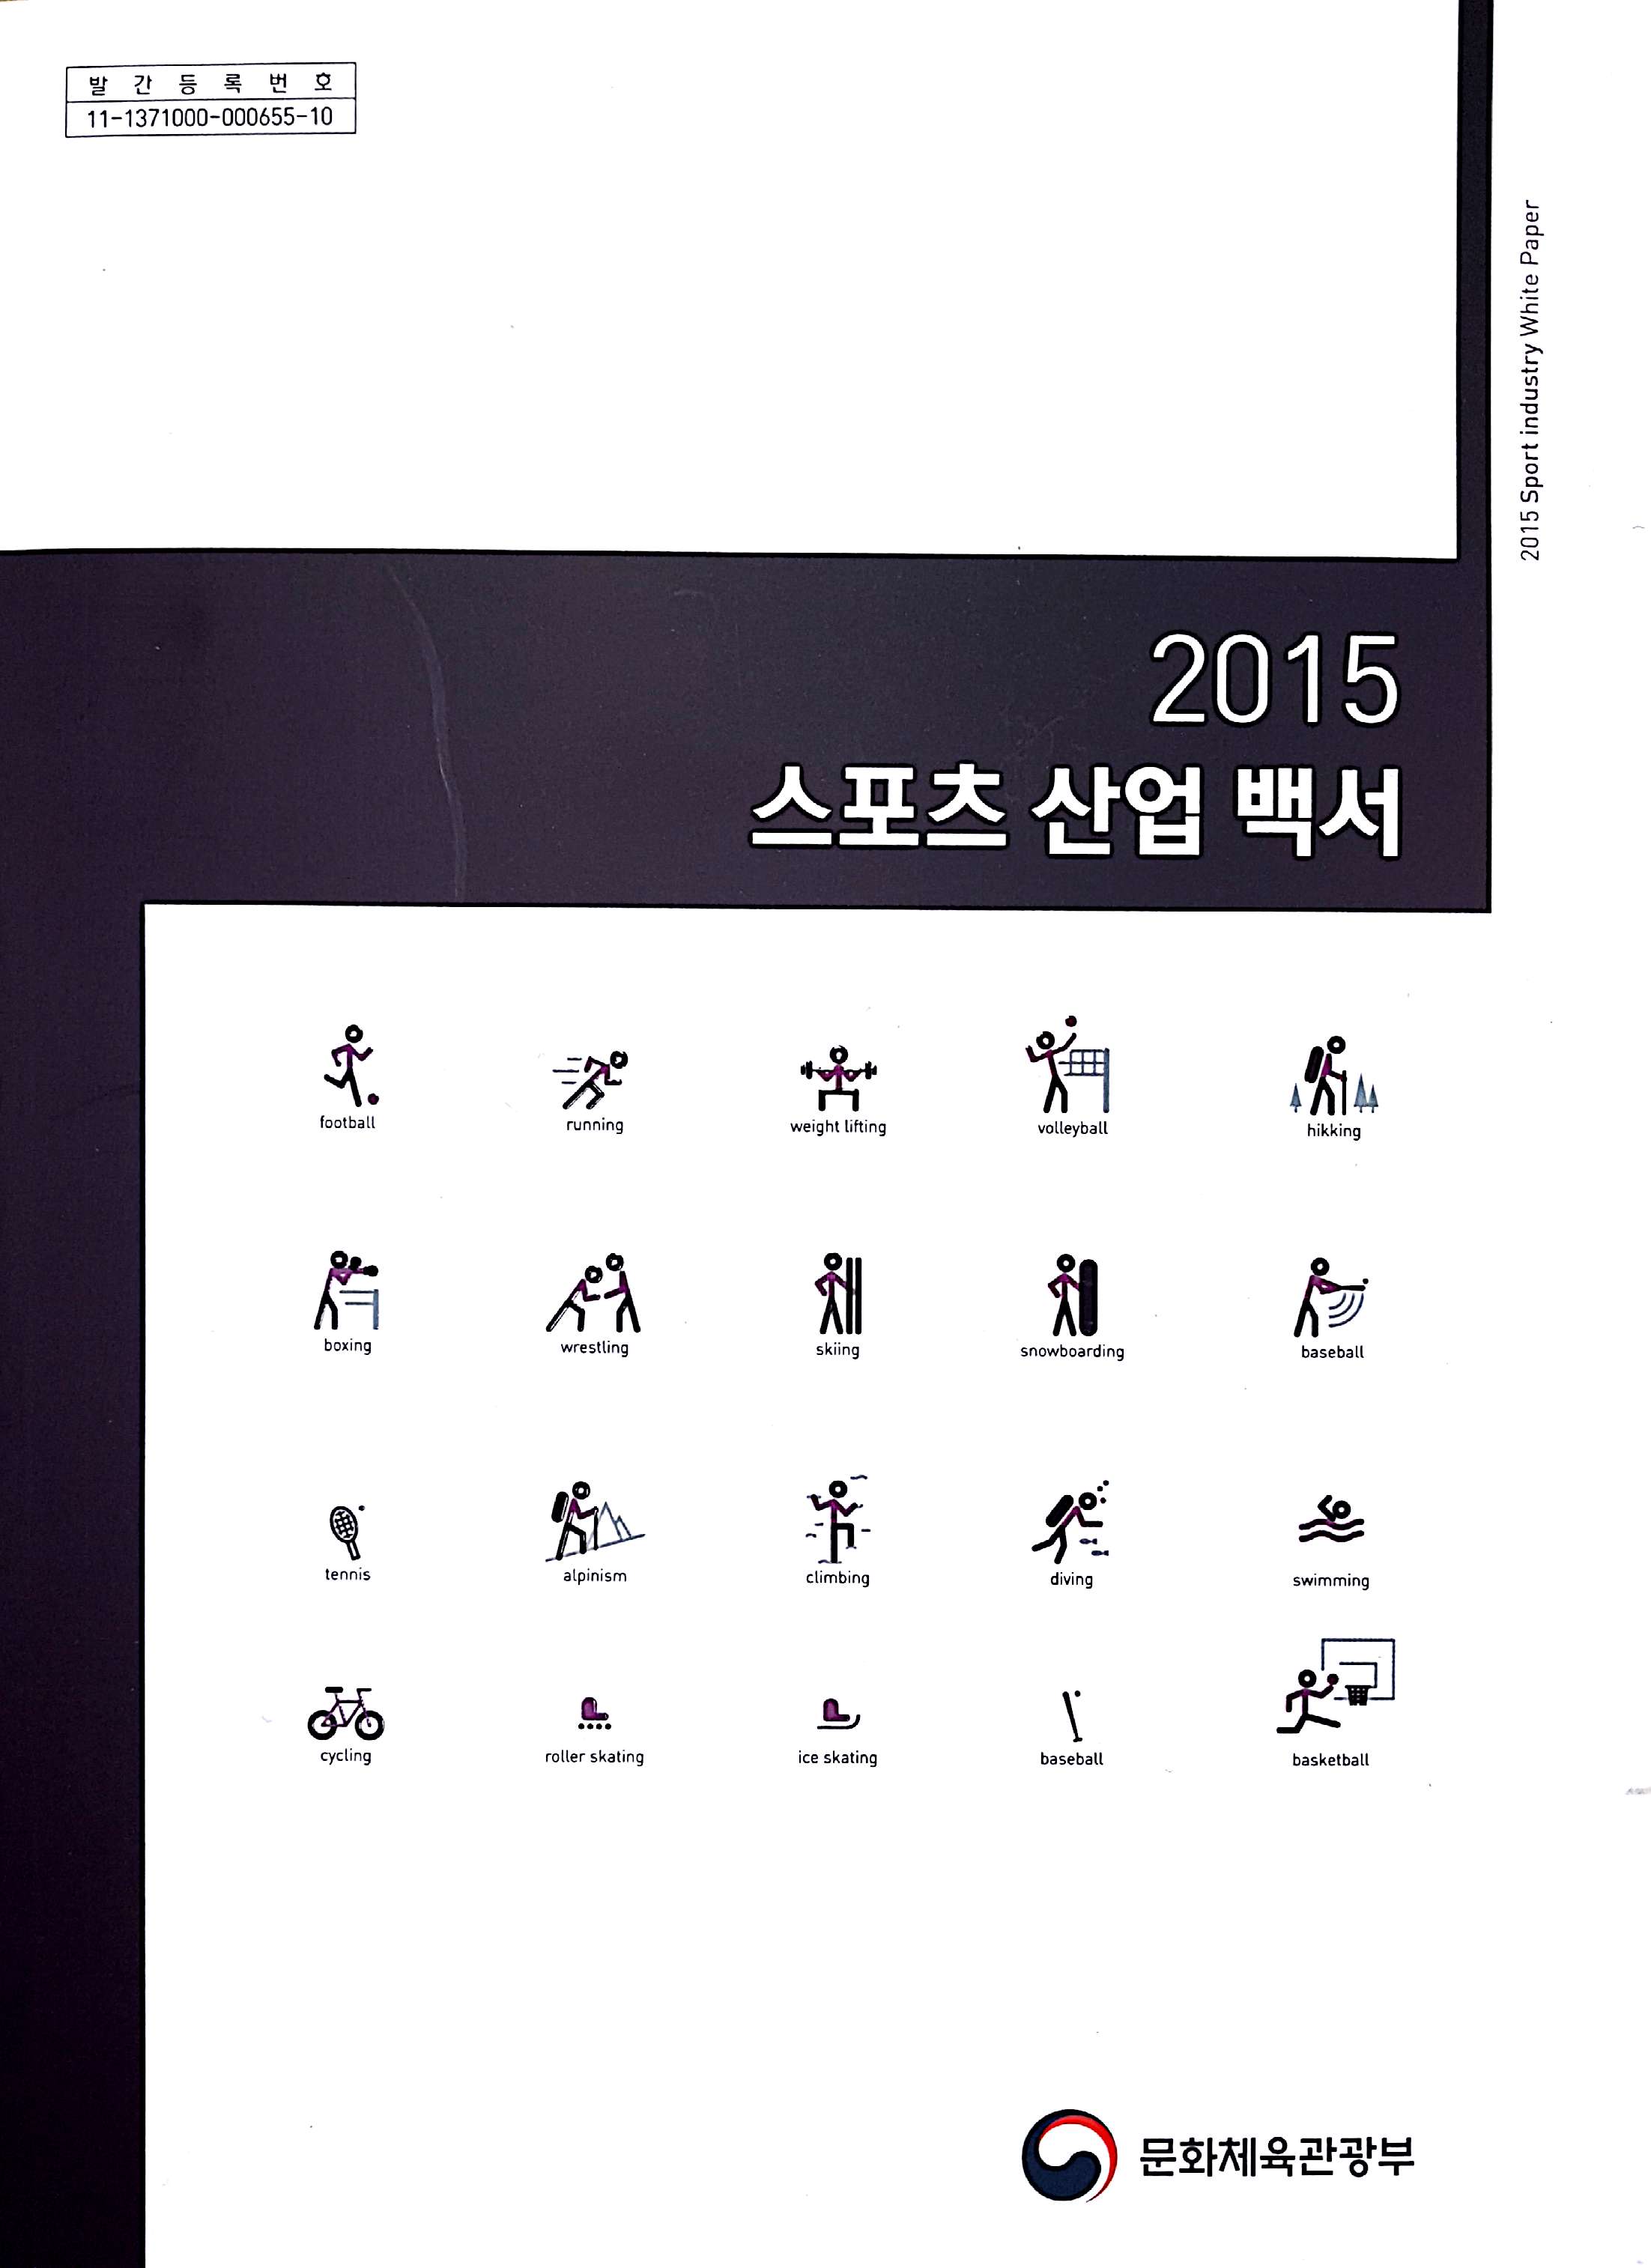 2015 스포츠산업백서